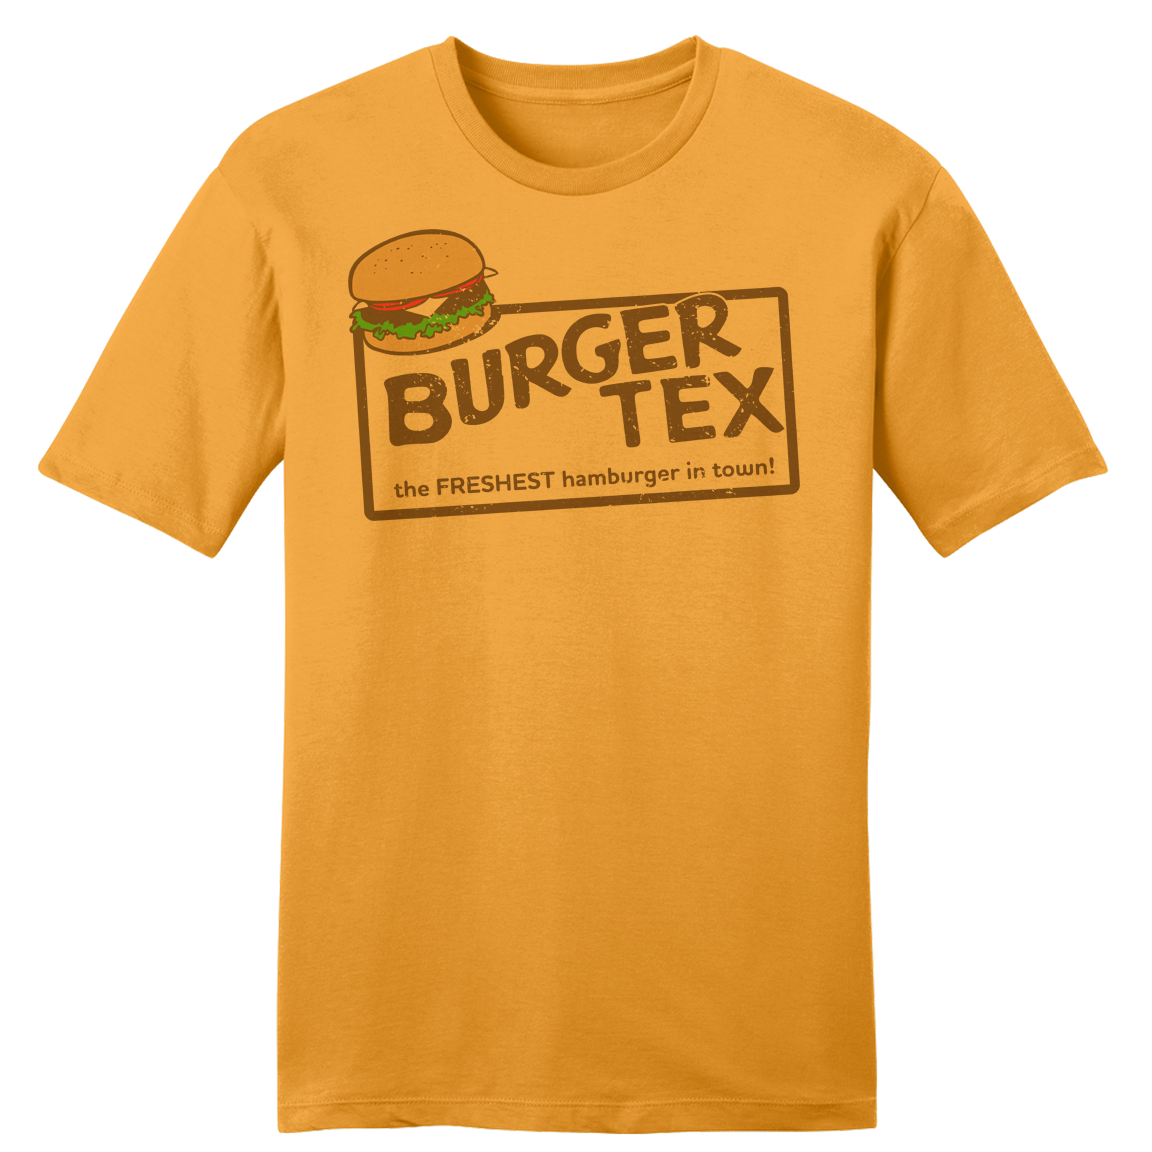 Burger Tex